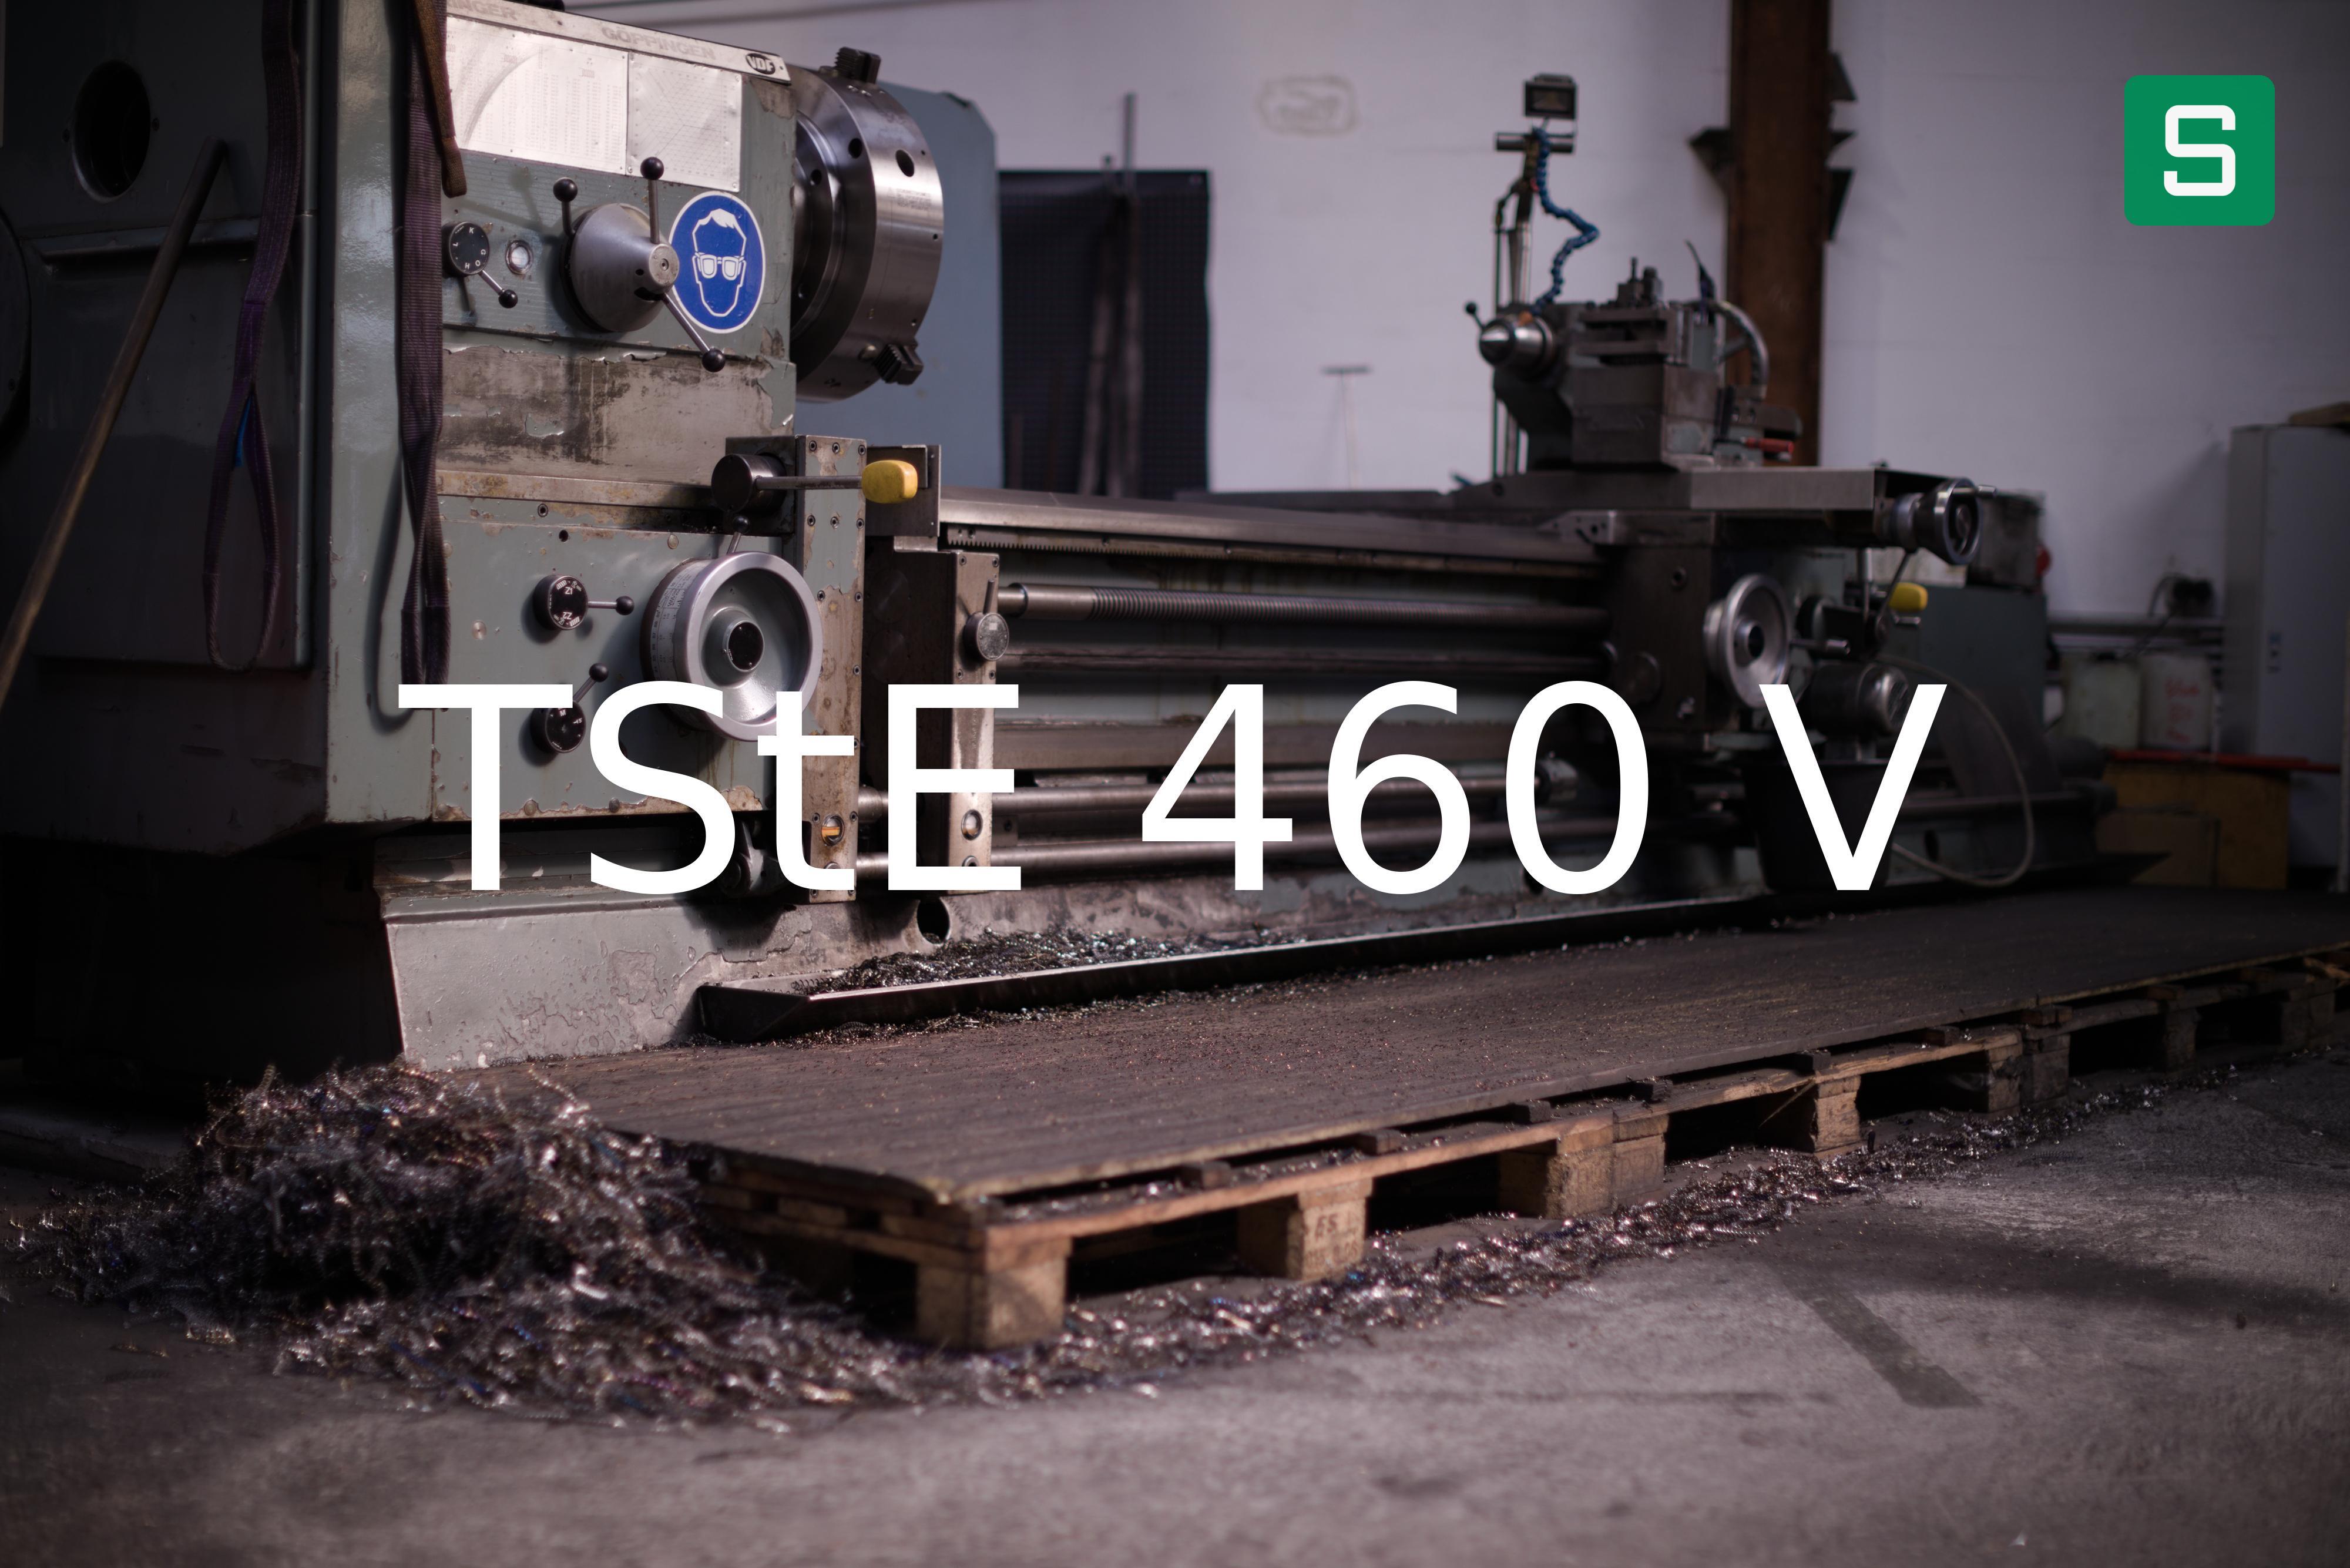 Steel Material: TStE 460 V